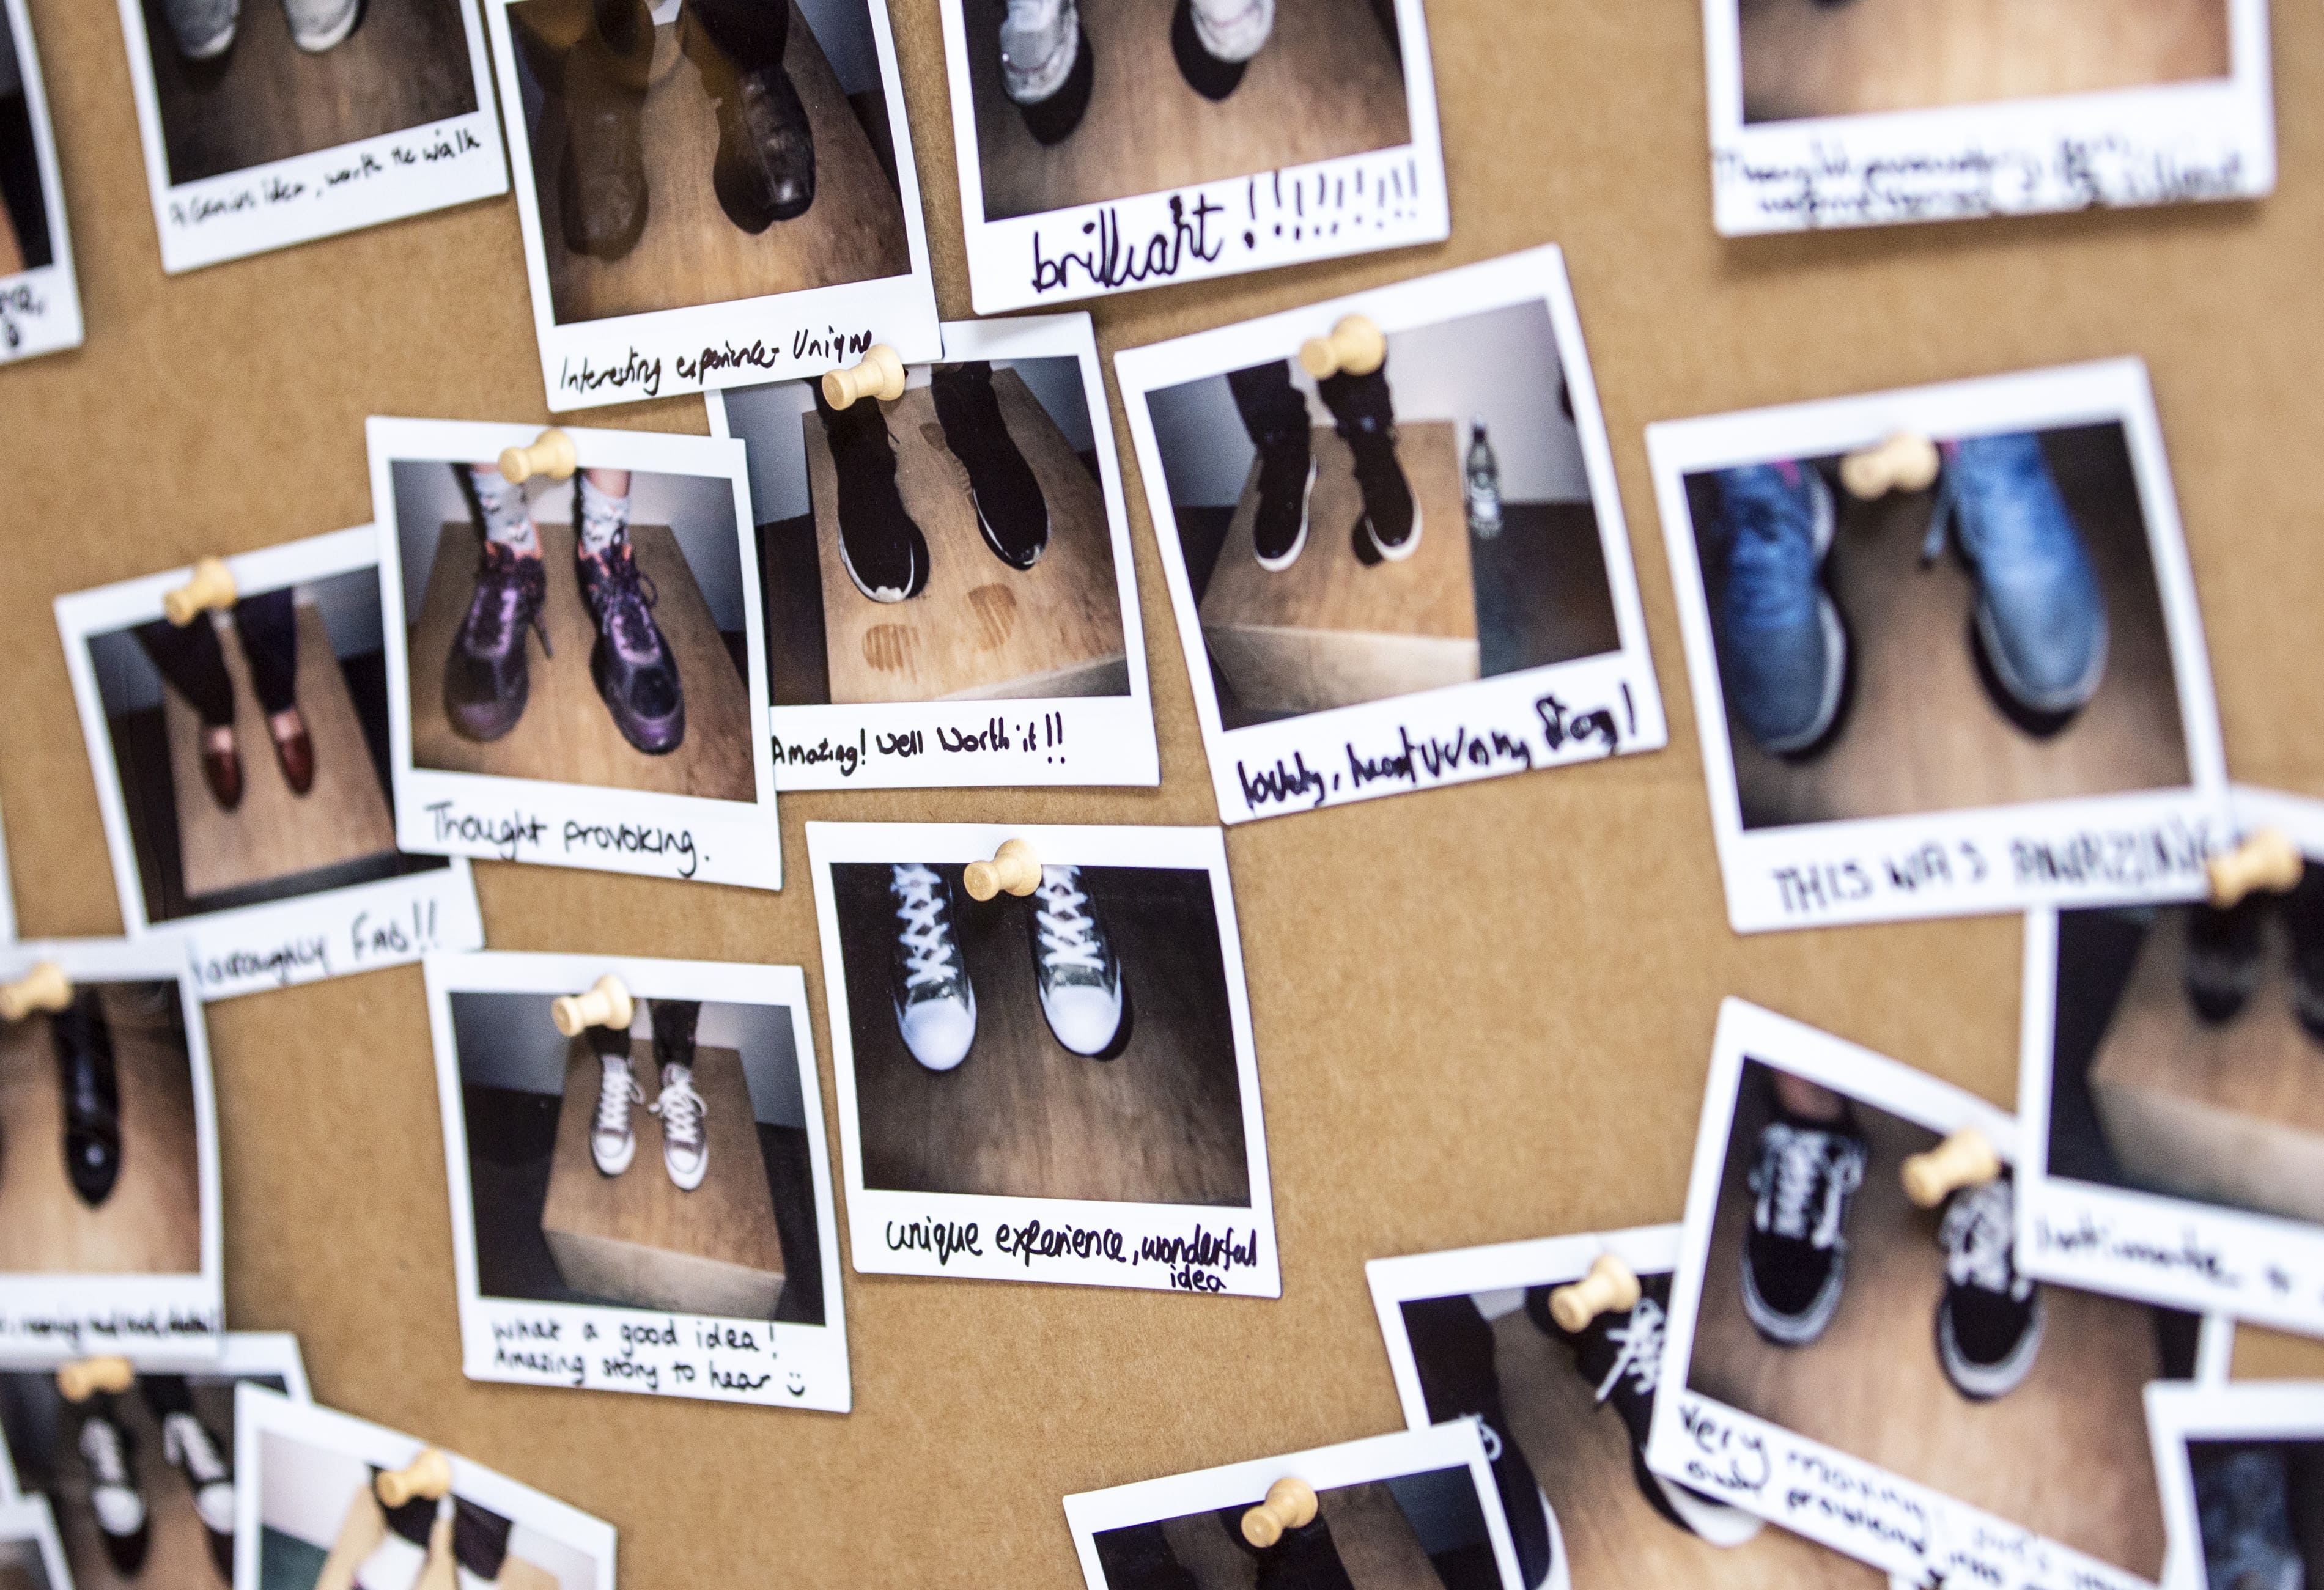 Photos polaroid représentant des pieds chaussés de divers souliers, affichées sur un babillard.